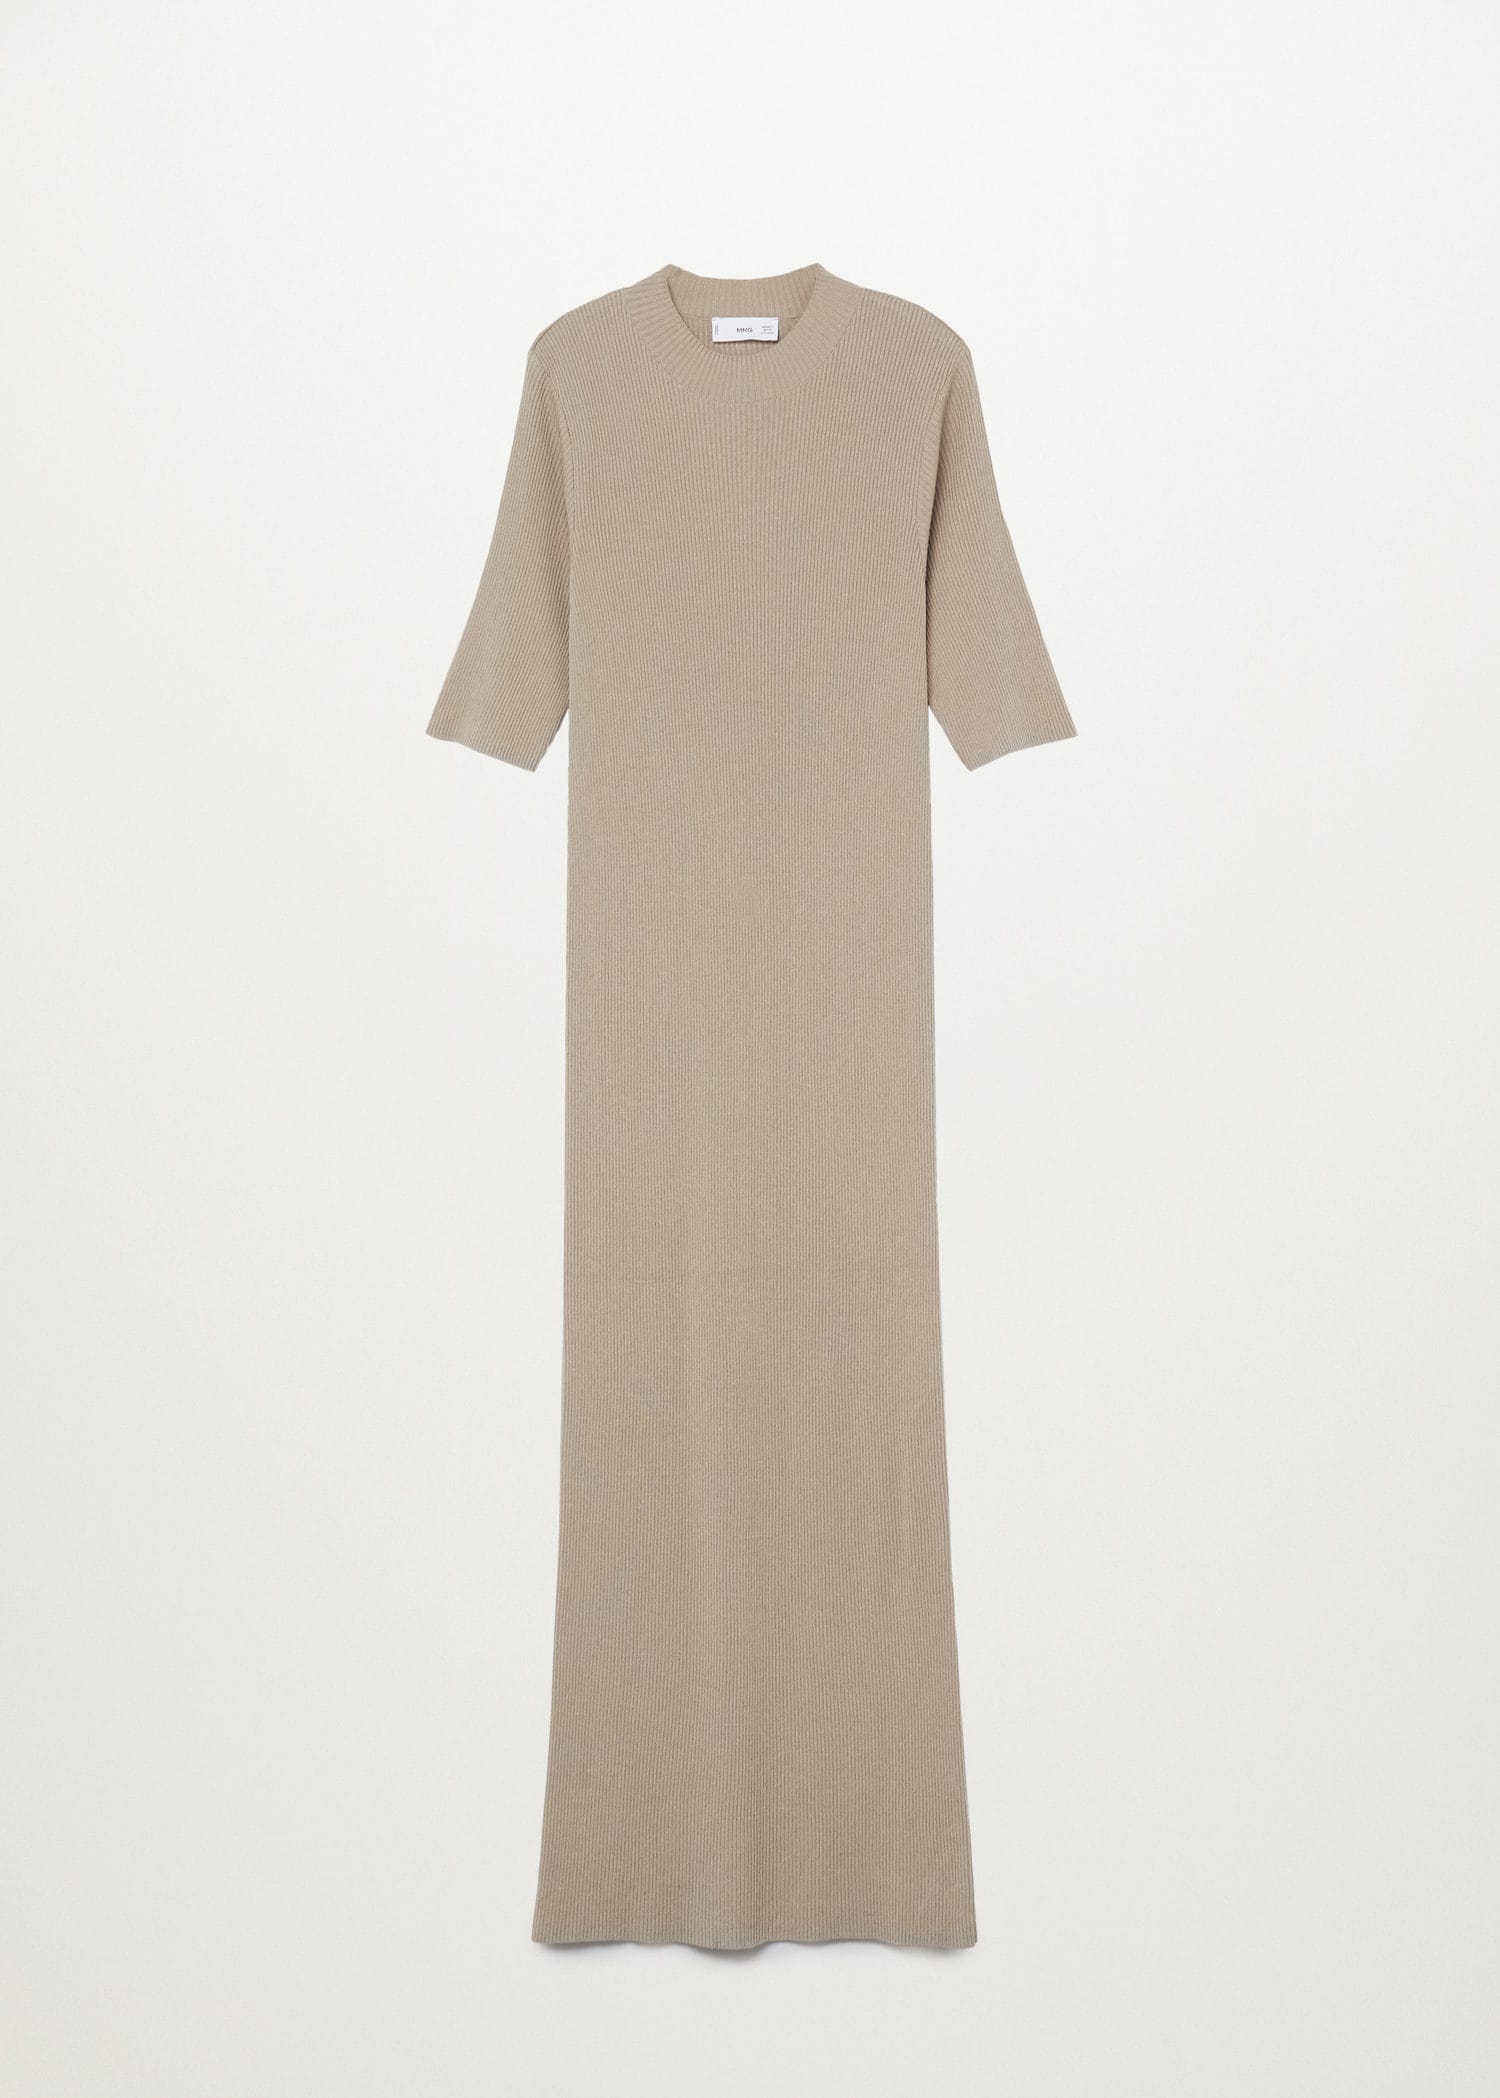 Хейли Бибер в идеальном бежевом платье которое вы не захотите снимать этим летом